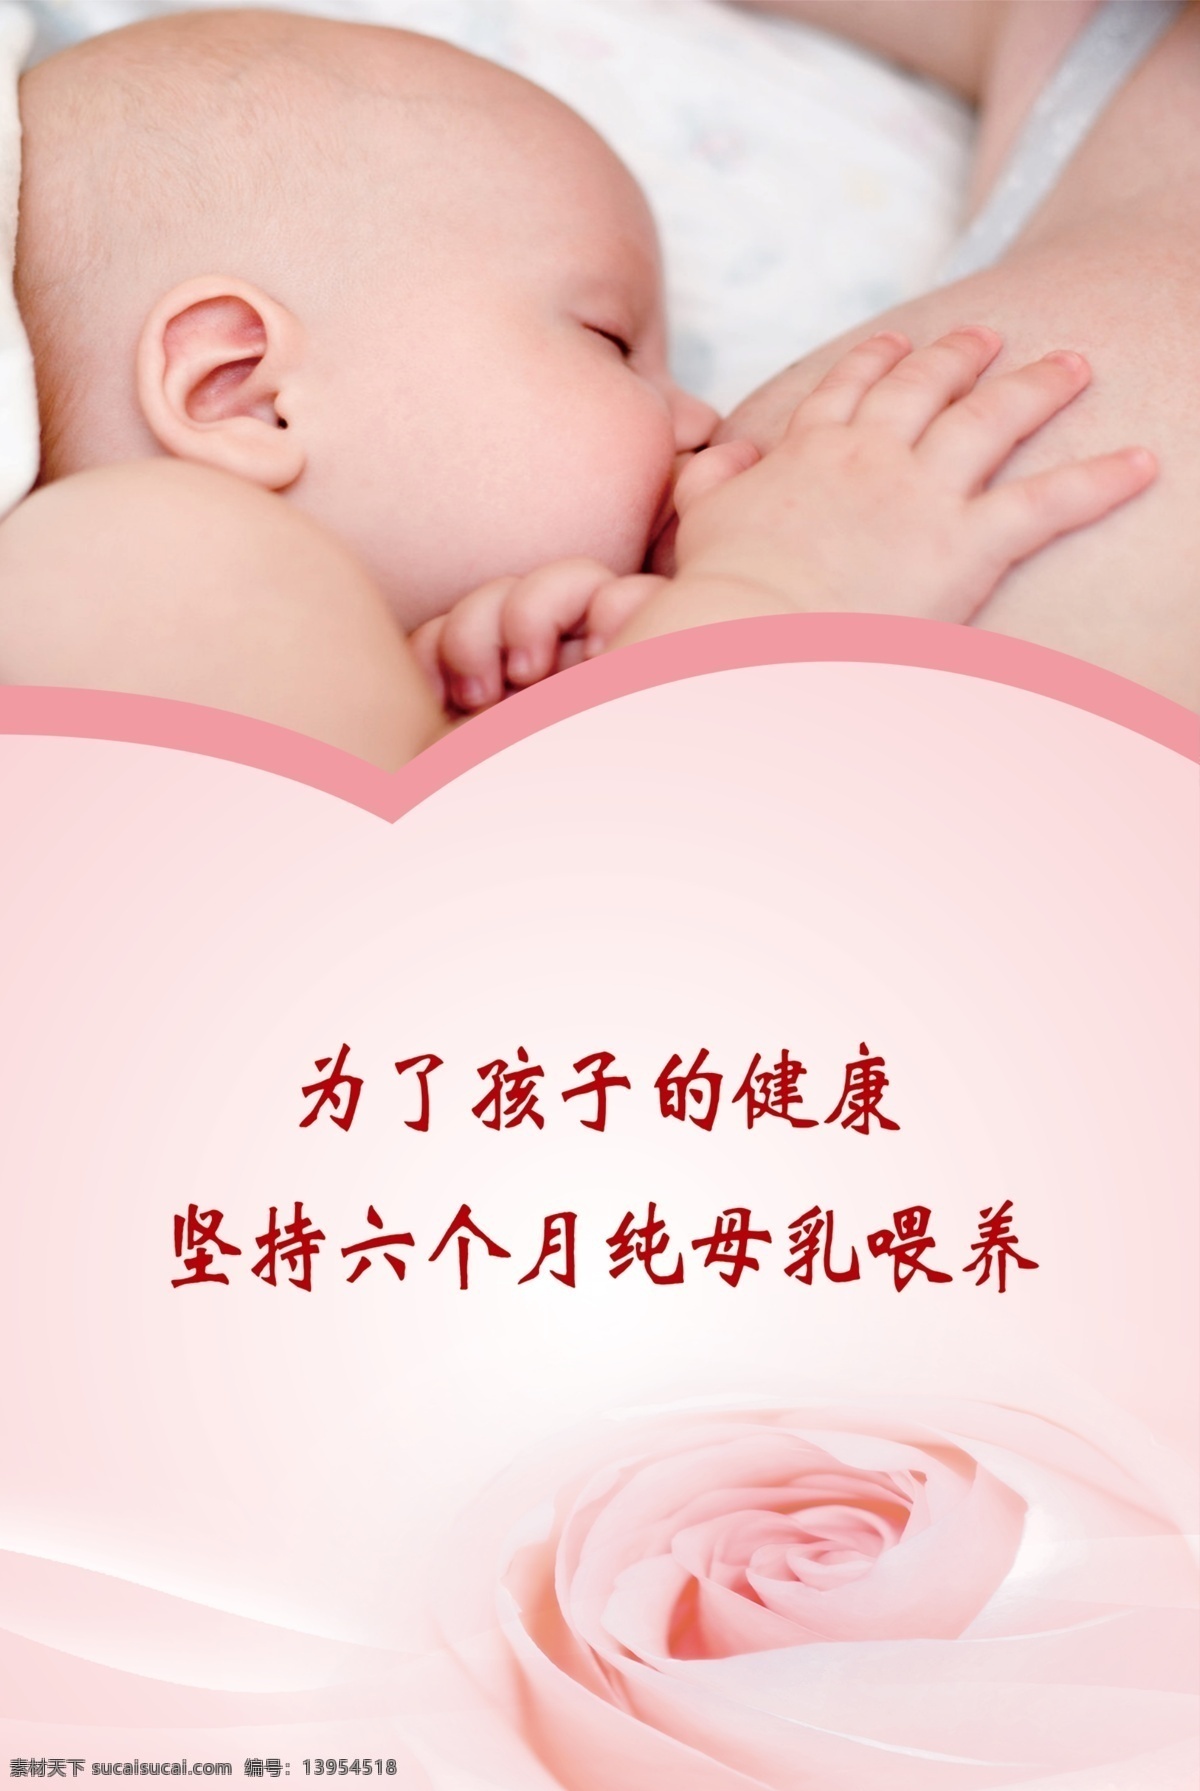 母乳喂养图片 母乳 婴儿 母乳喂养 母婴店海报 装饰画 分层